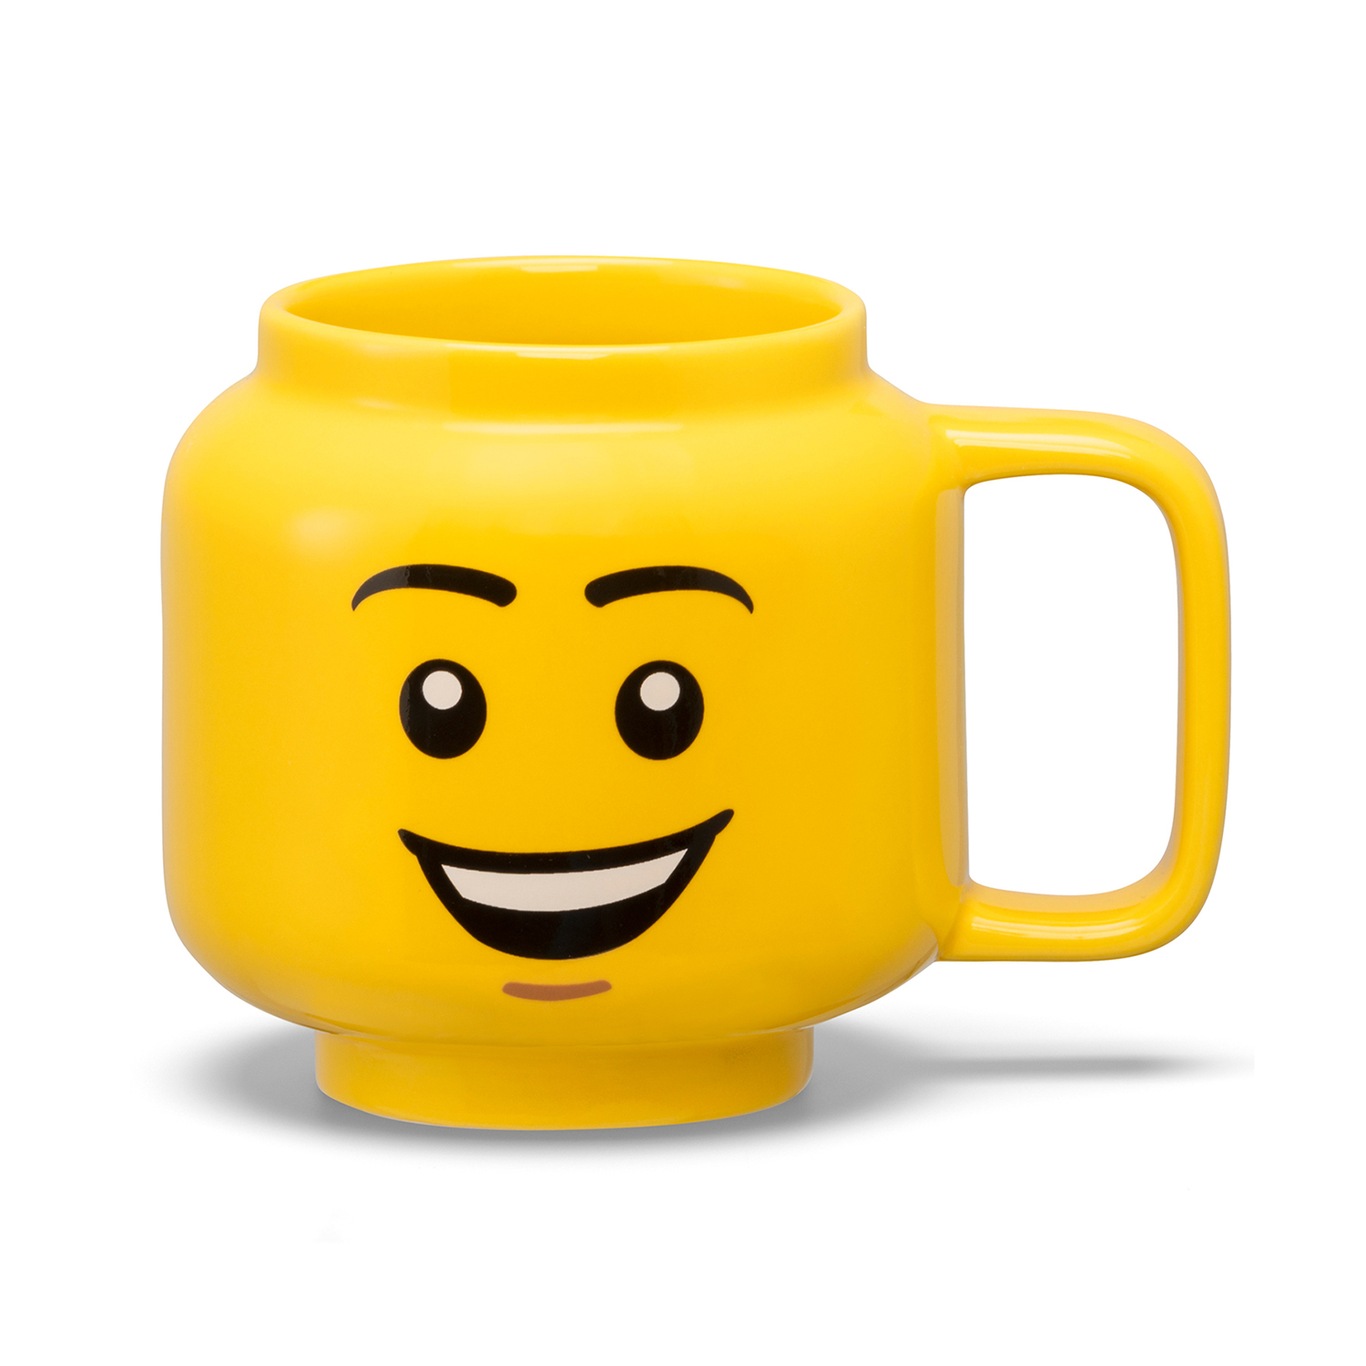 LEGO Ceramic Mug Small Boy Krus Gul, S